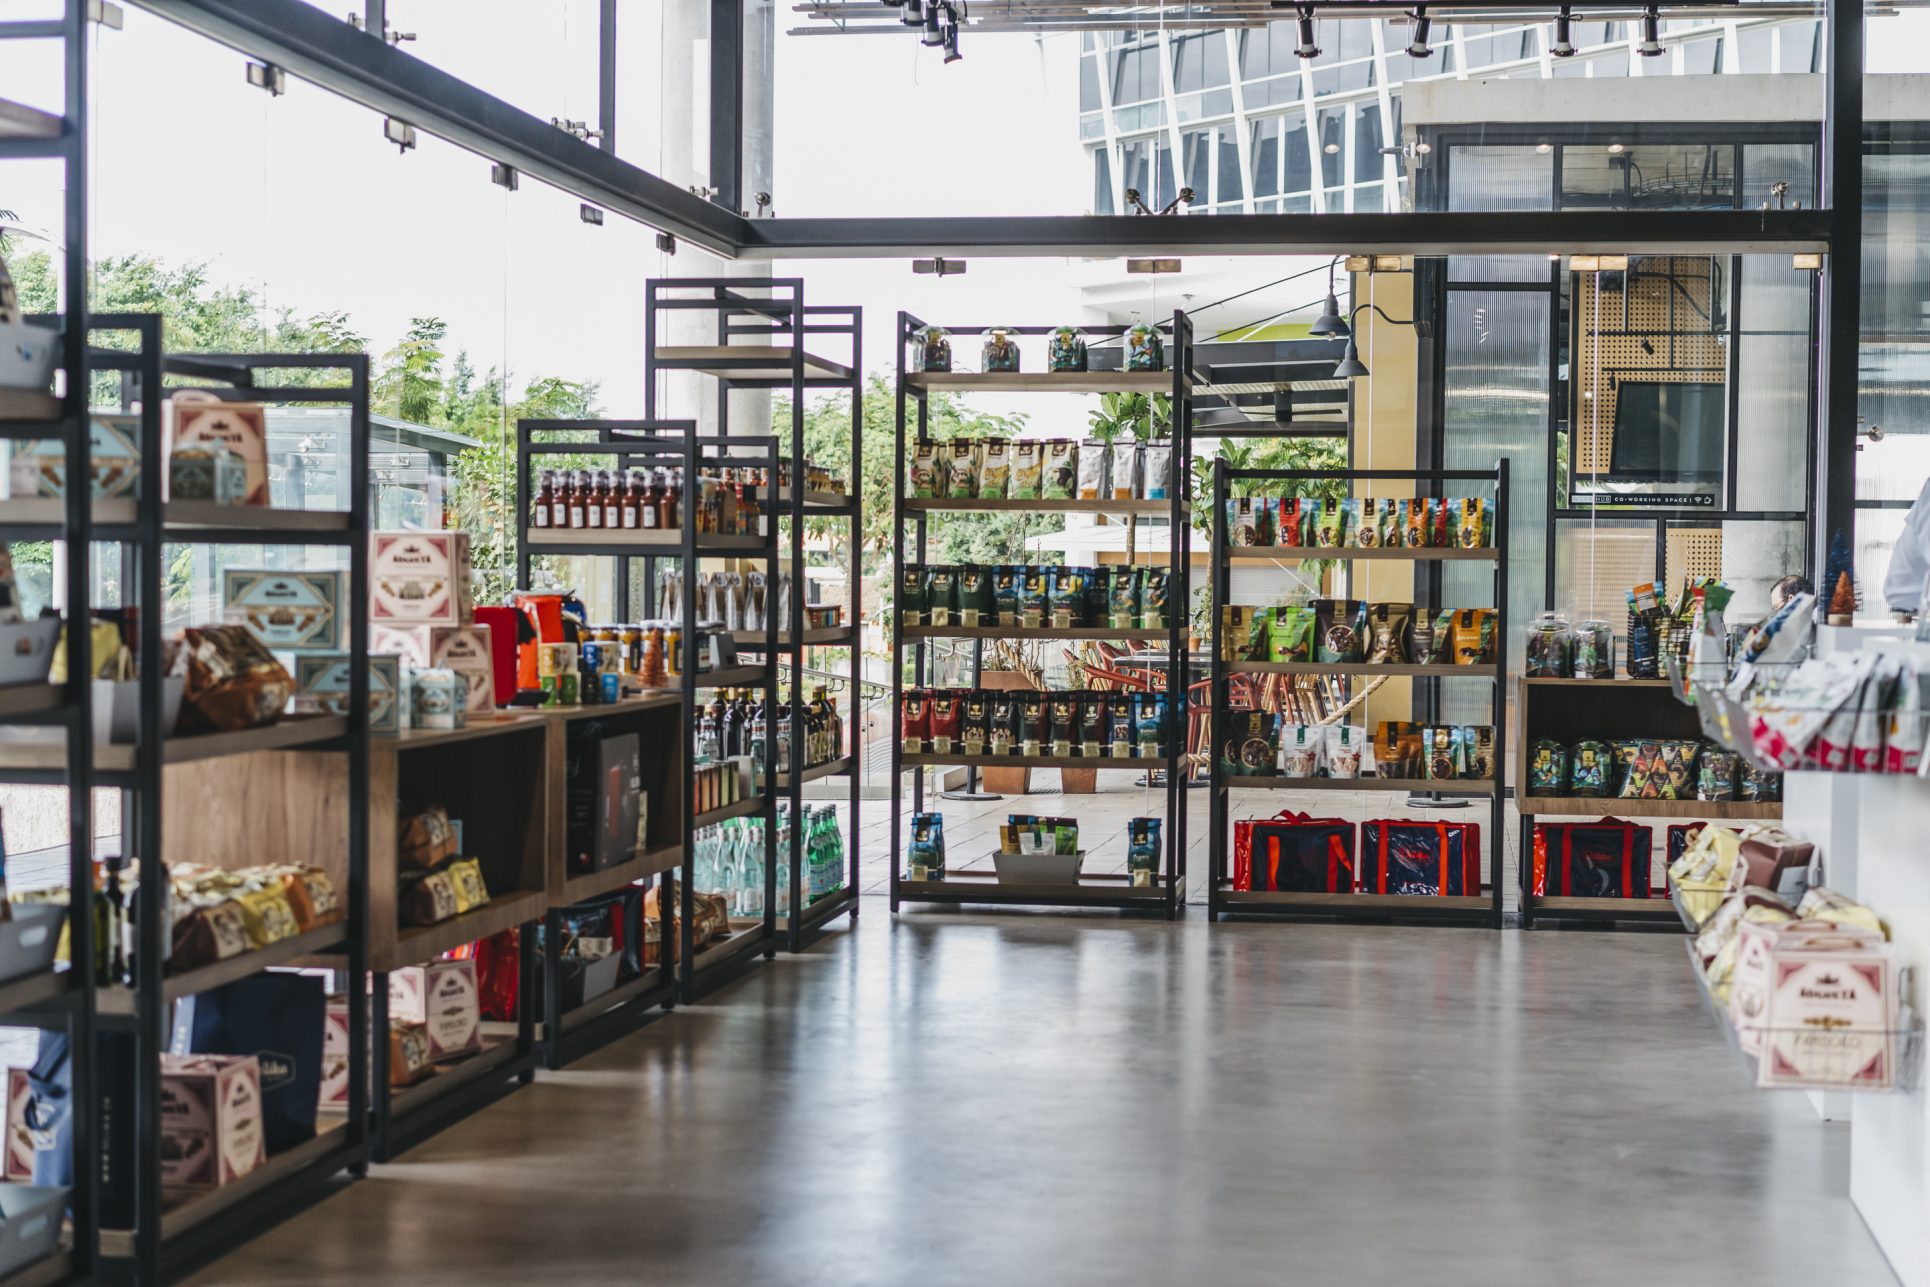 Abre tienda de productos gourmet en Avenida Escazú tras inversión de $250.000